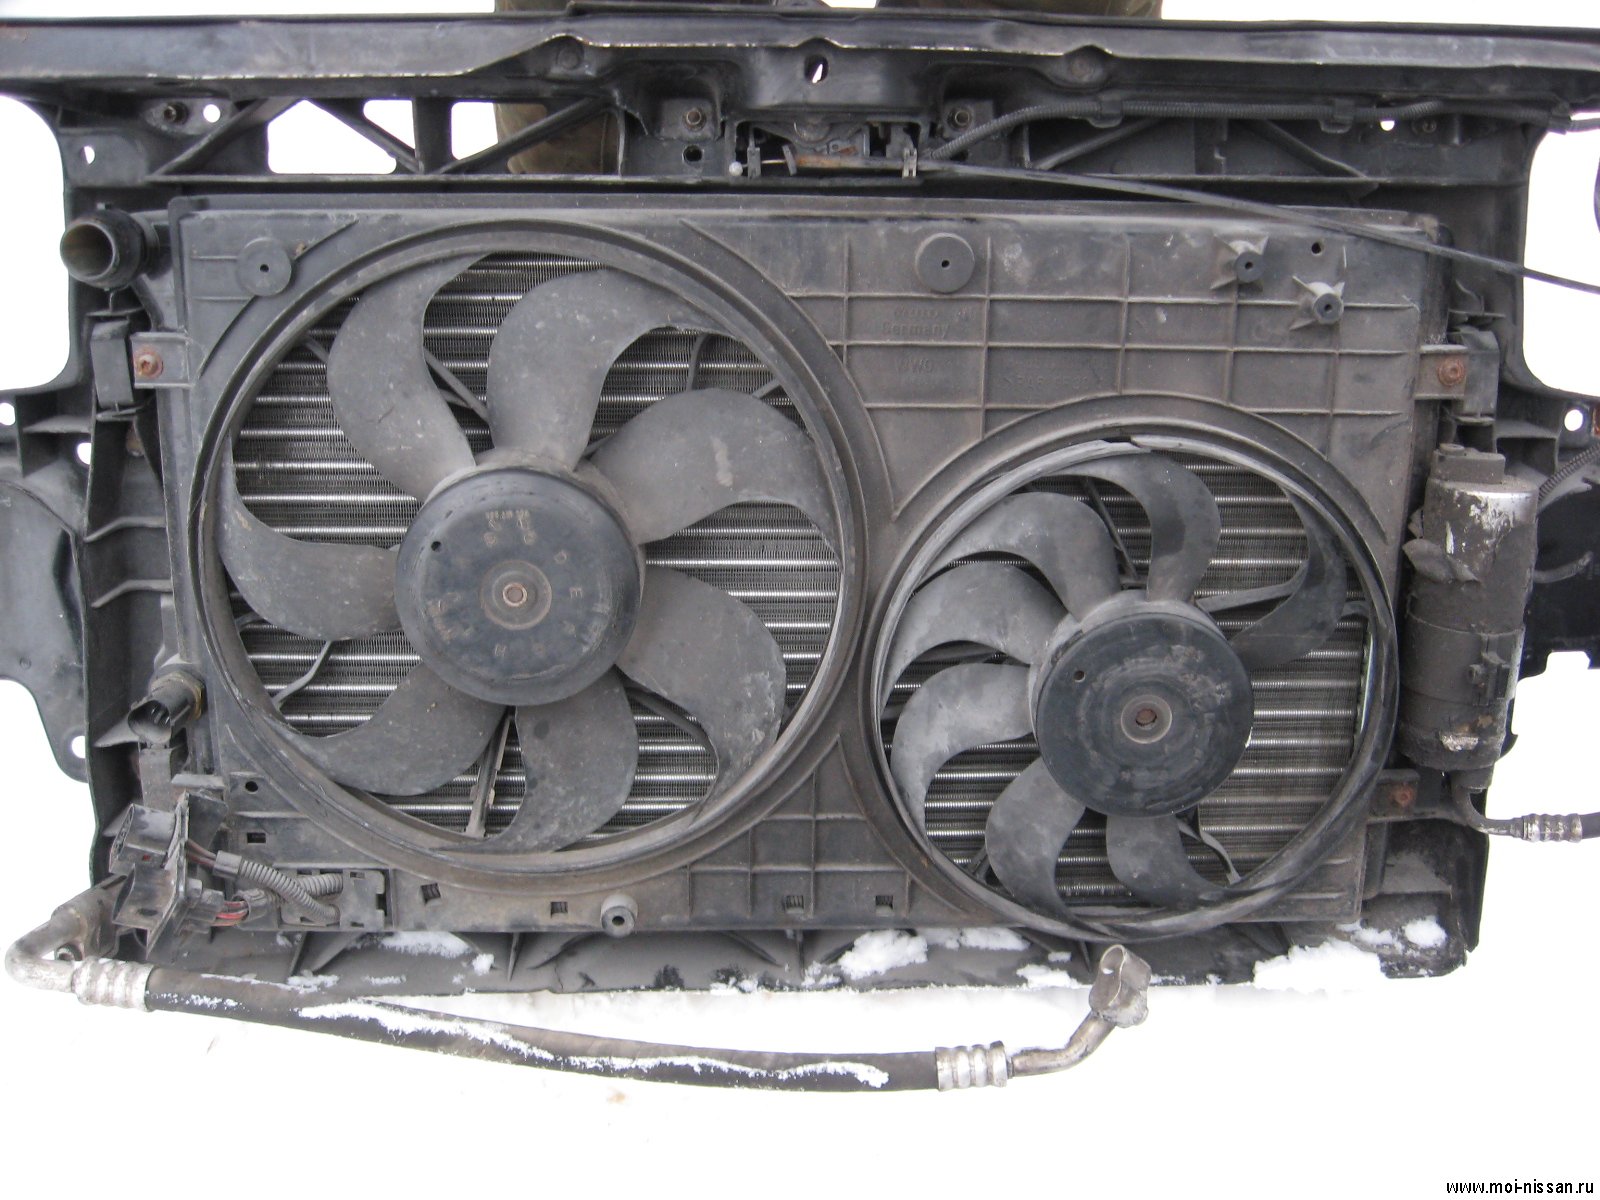 Как снять радиатор охлаждения Volkswagen Jetta VI фото